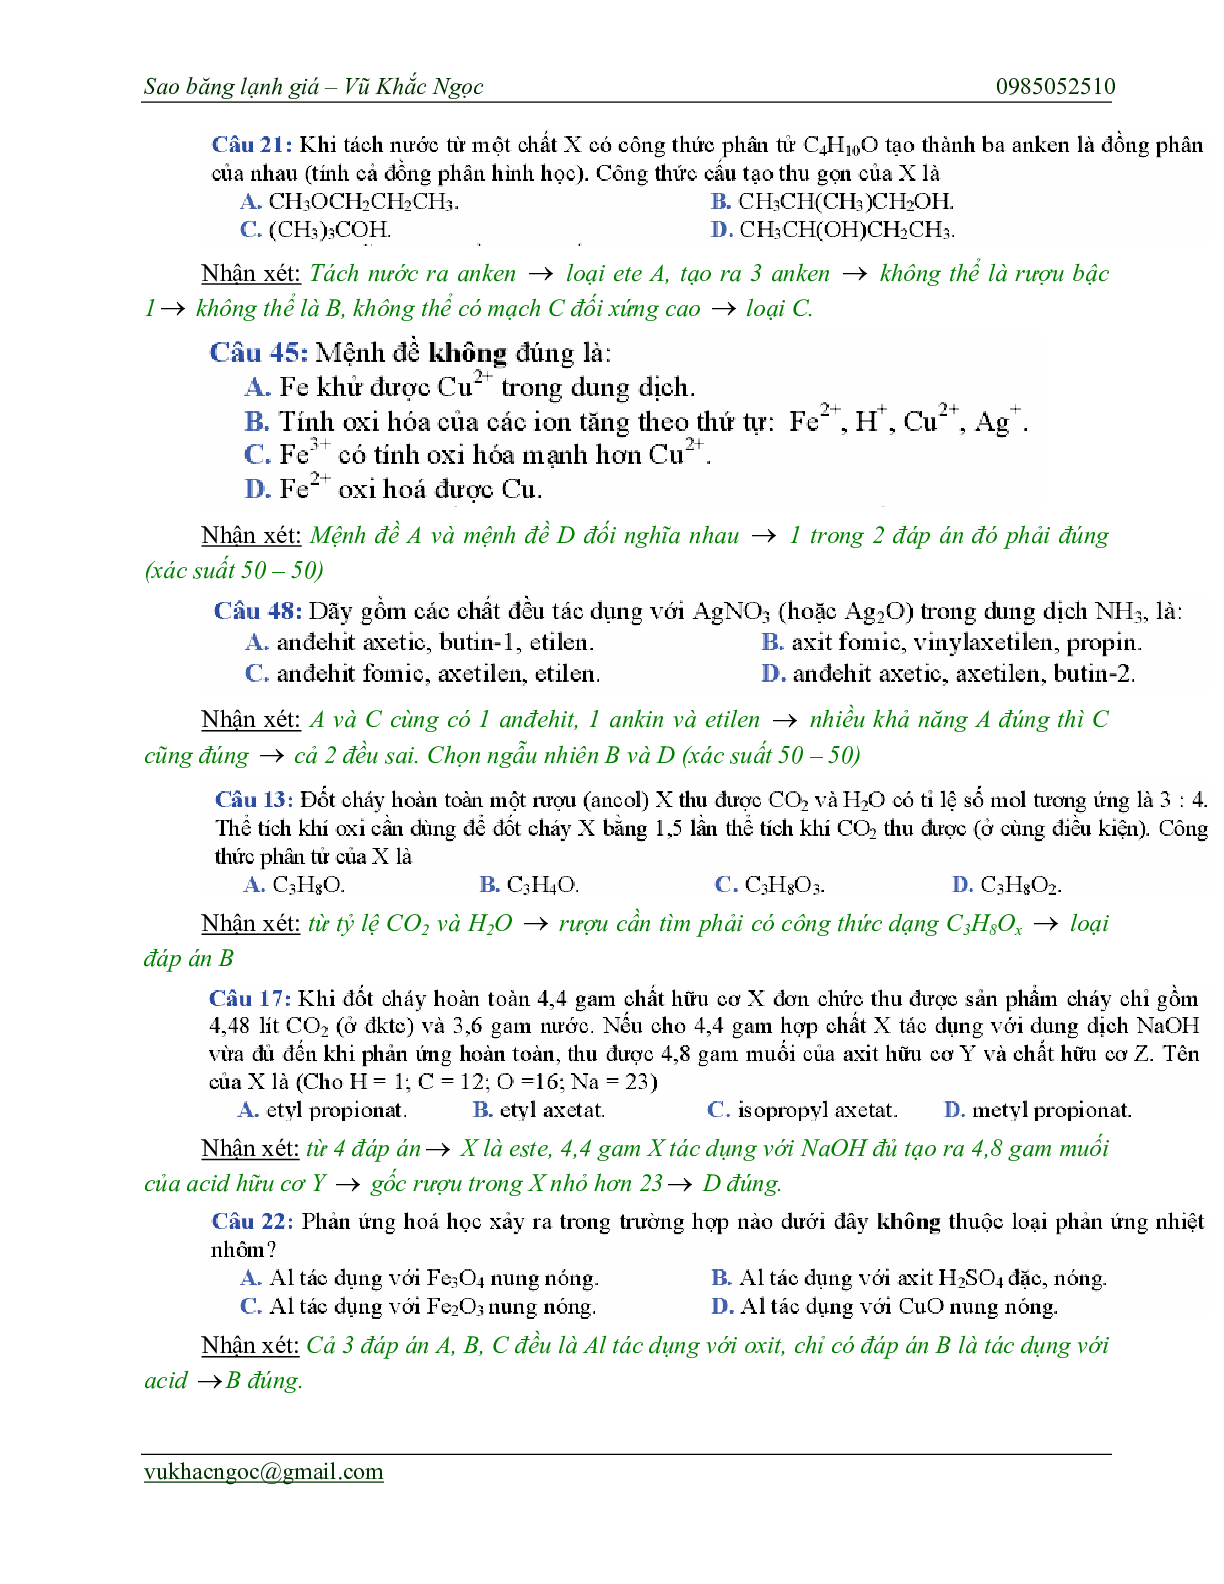 Chiến thuật chọn ngẫu nhiên trong bài thi trắc nghiệm môn Hóa học thi THPT Quốc Gia (trang 10)